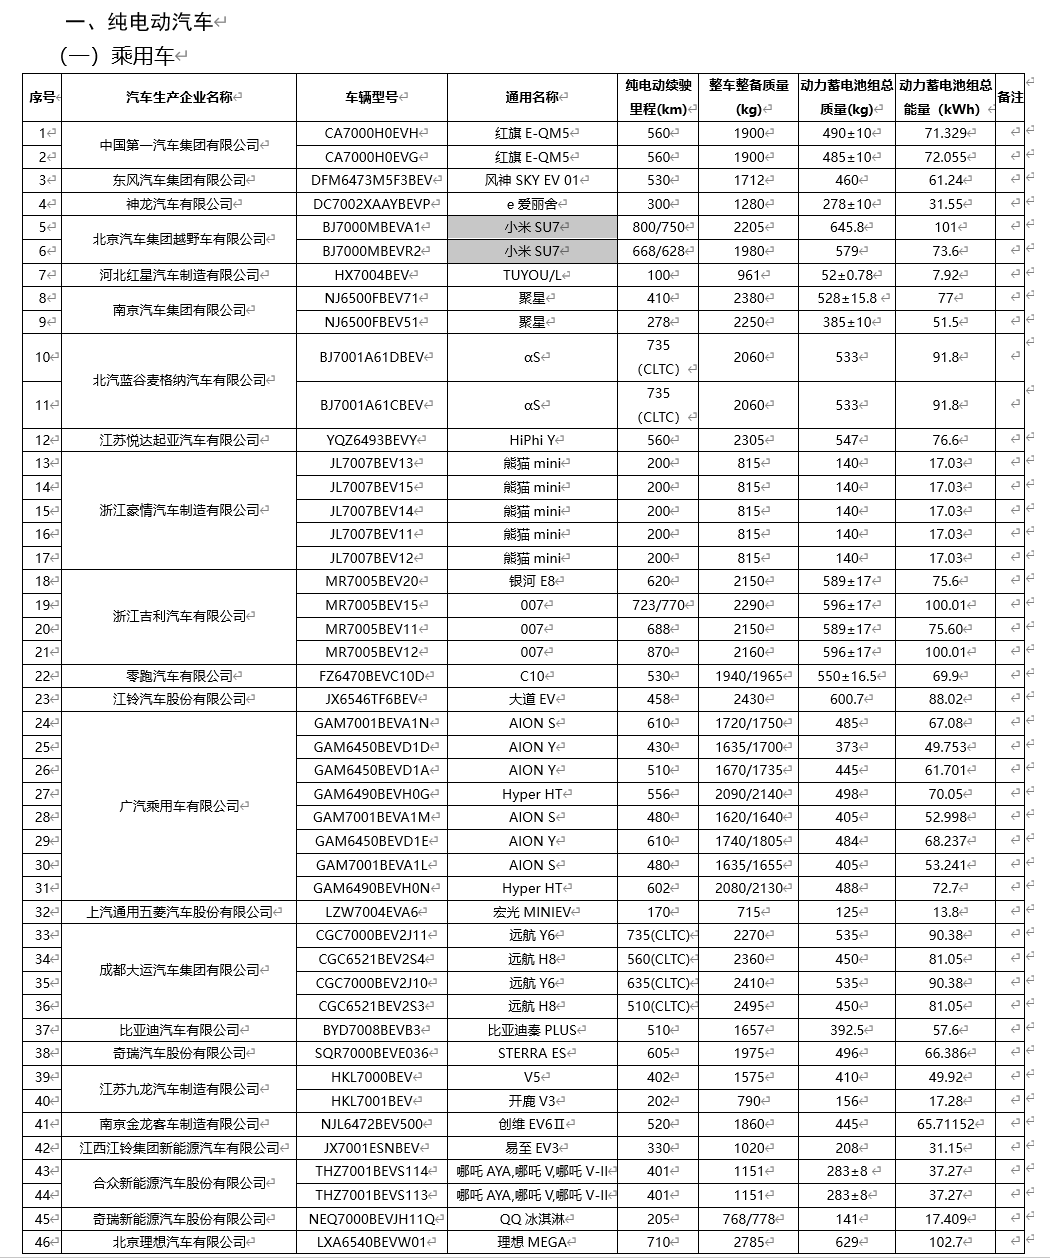 小米SU7在最新免征车辆购置税名单